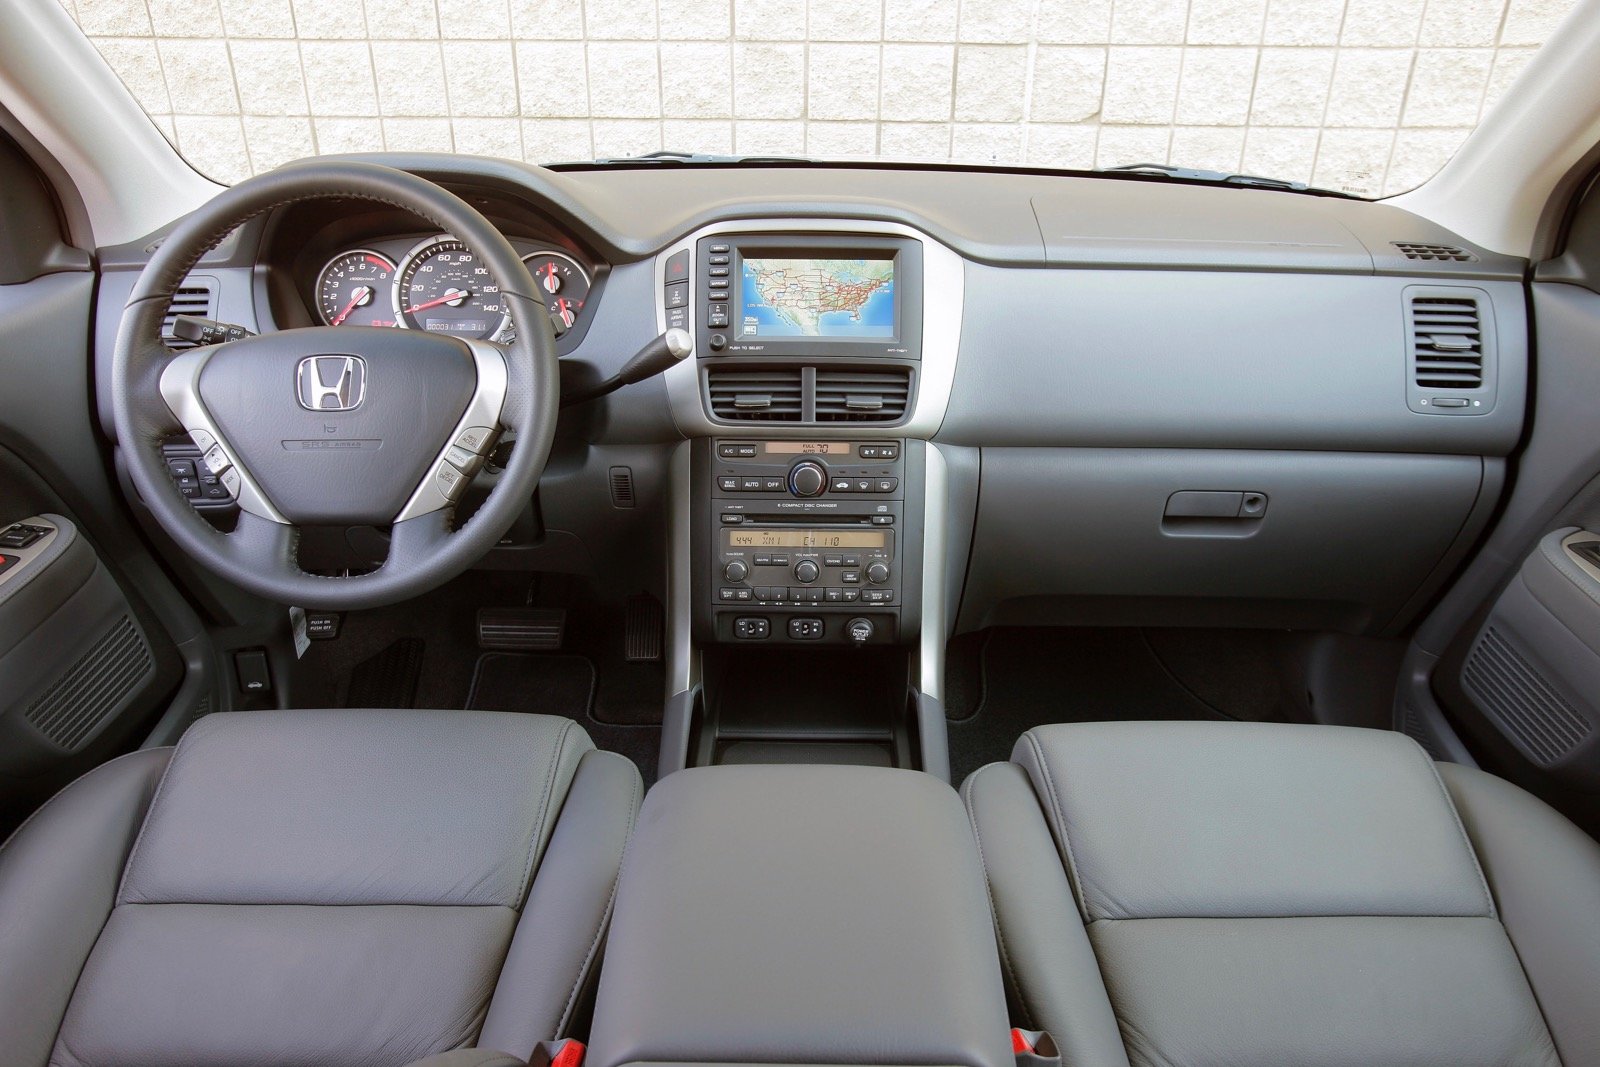 2006 Honda Pilot: Prices, Reviews & Pictures - CarGurus